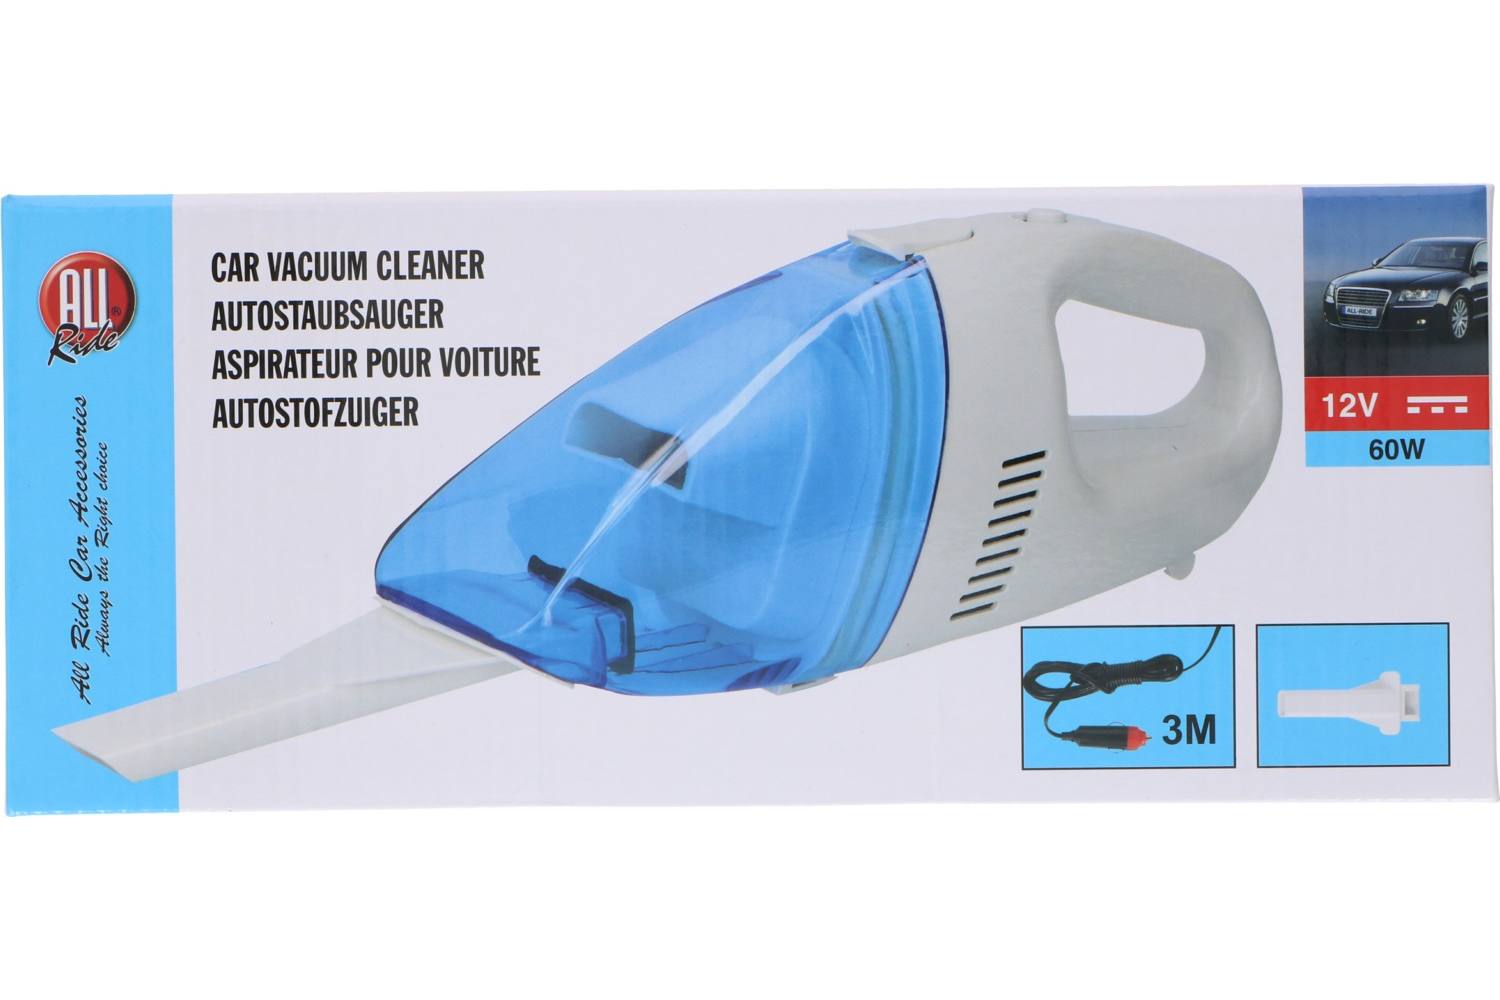 Vacuum cleaner, AllRide, 12V, 60W 2